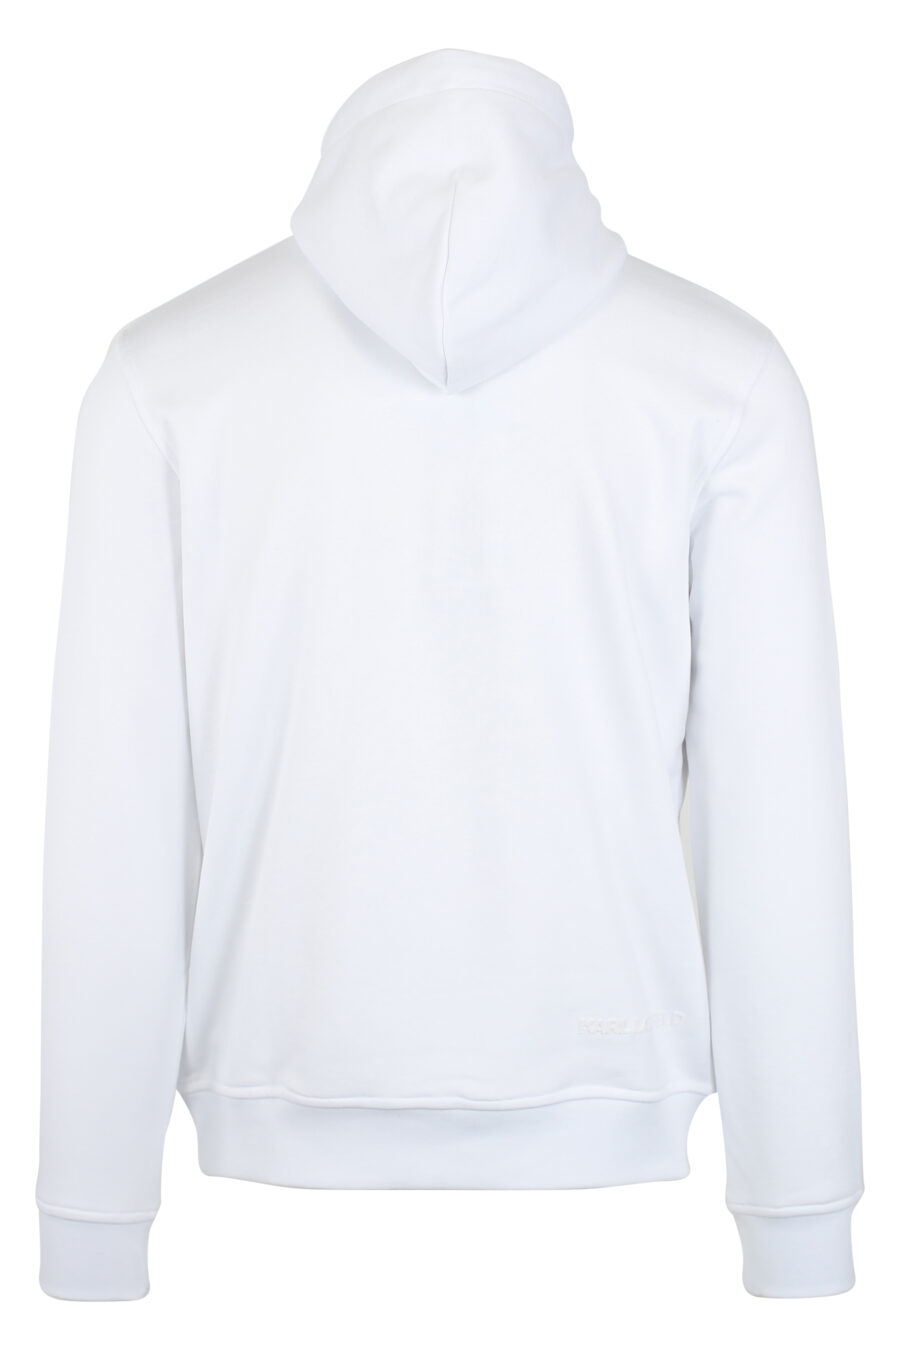 Sudadera blanca con capucha y logo "karl" en silueta negro - IMG 9489